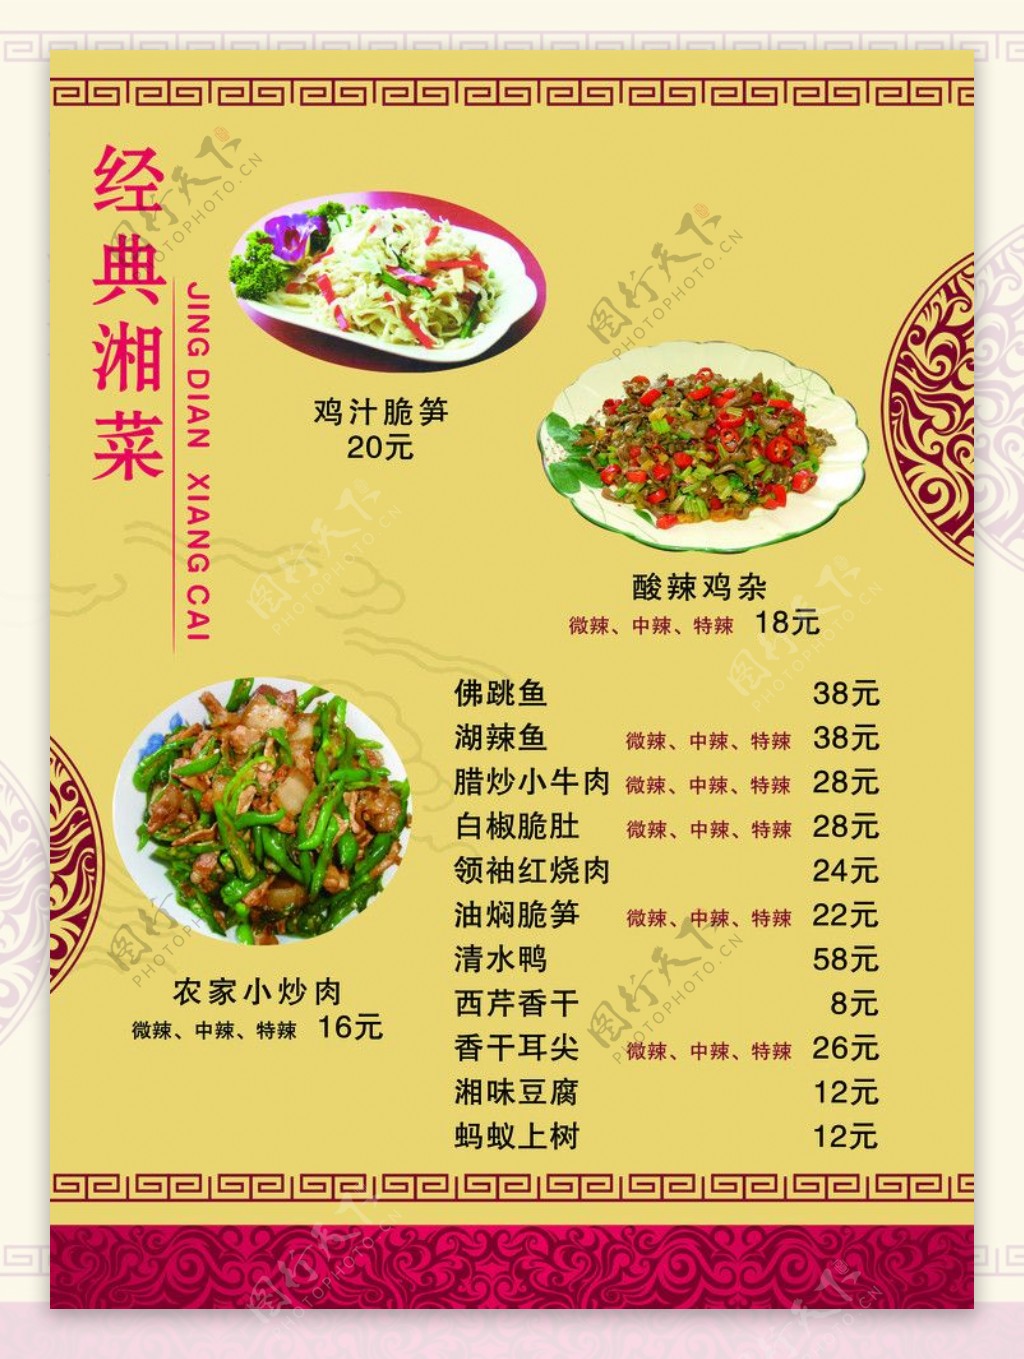 干锅铁板湘菜菜谱菜谱菜单图片